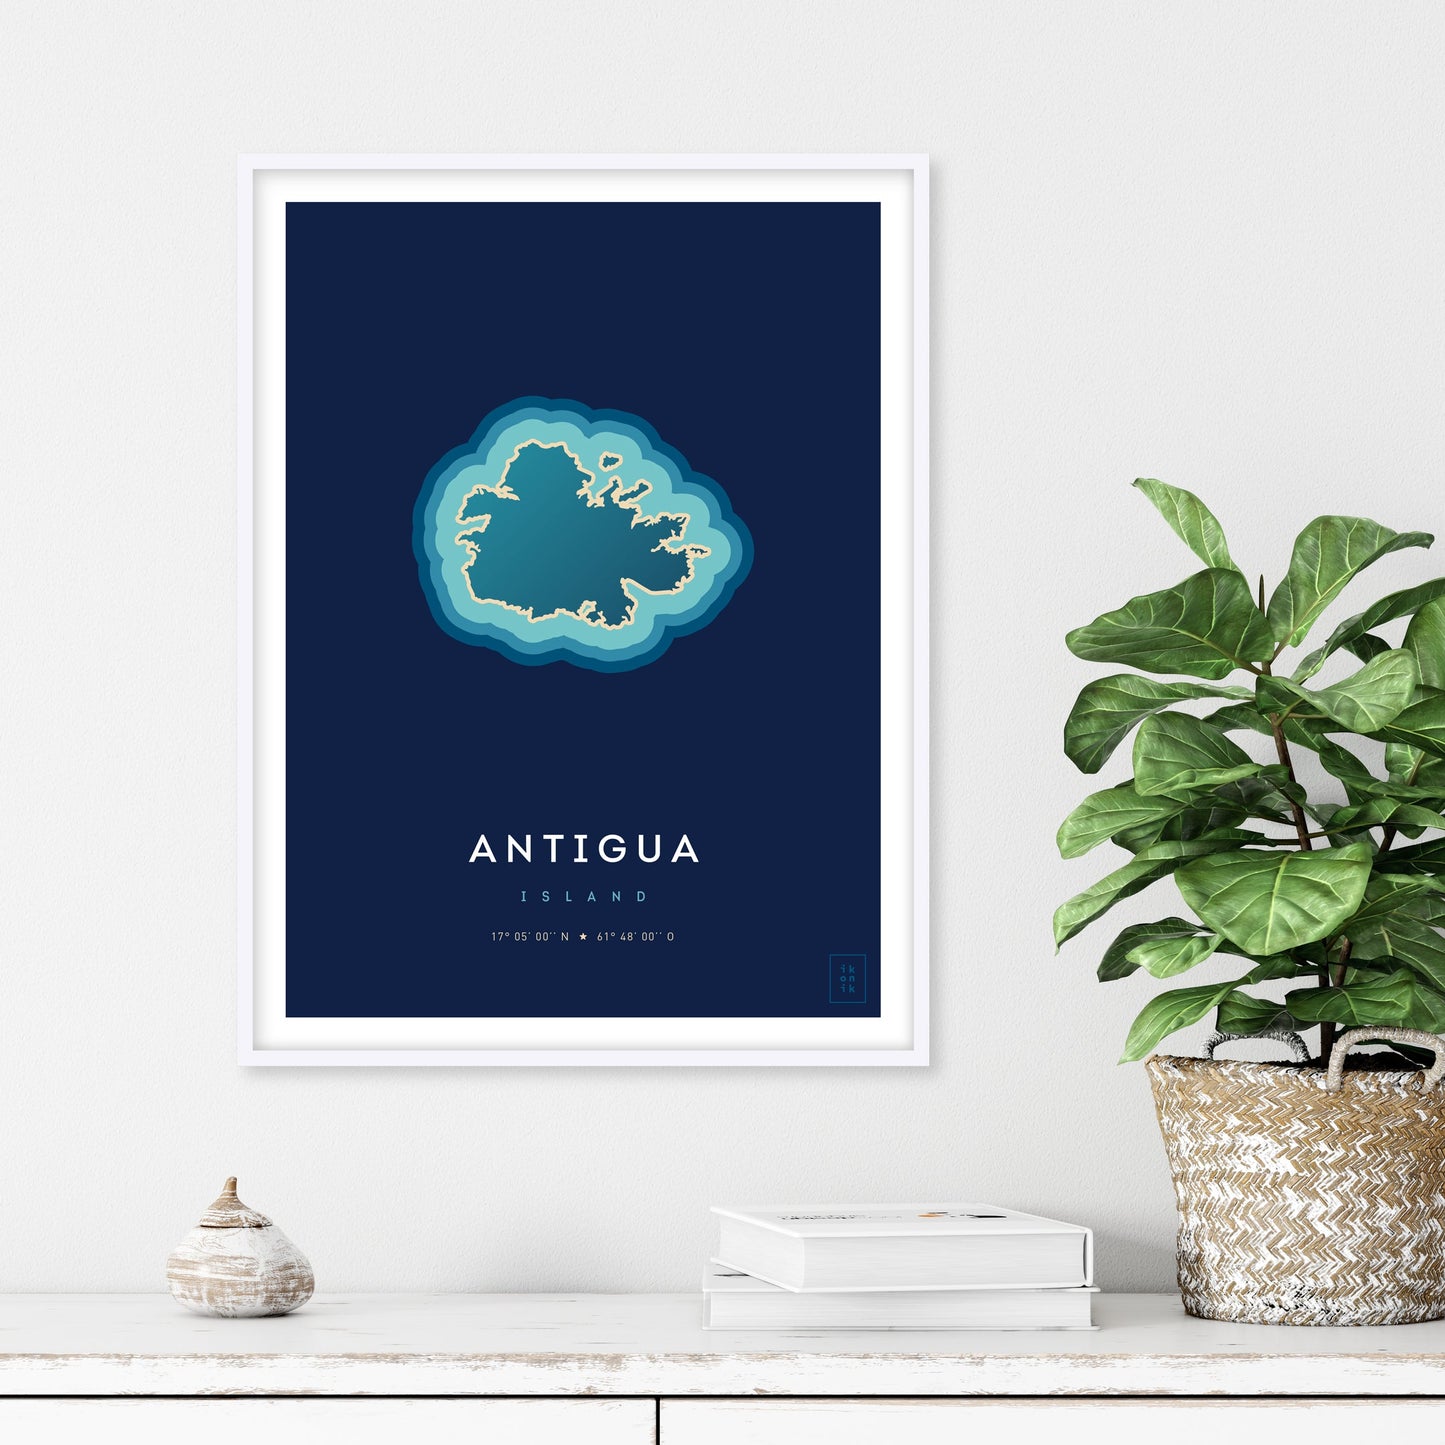 Affiche de l'île d'Antigua